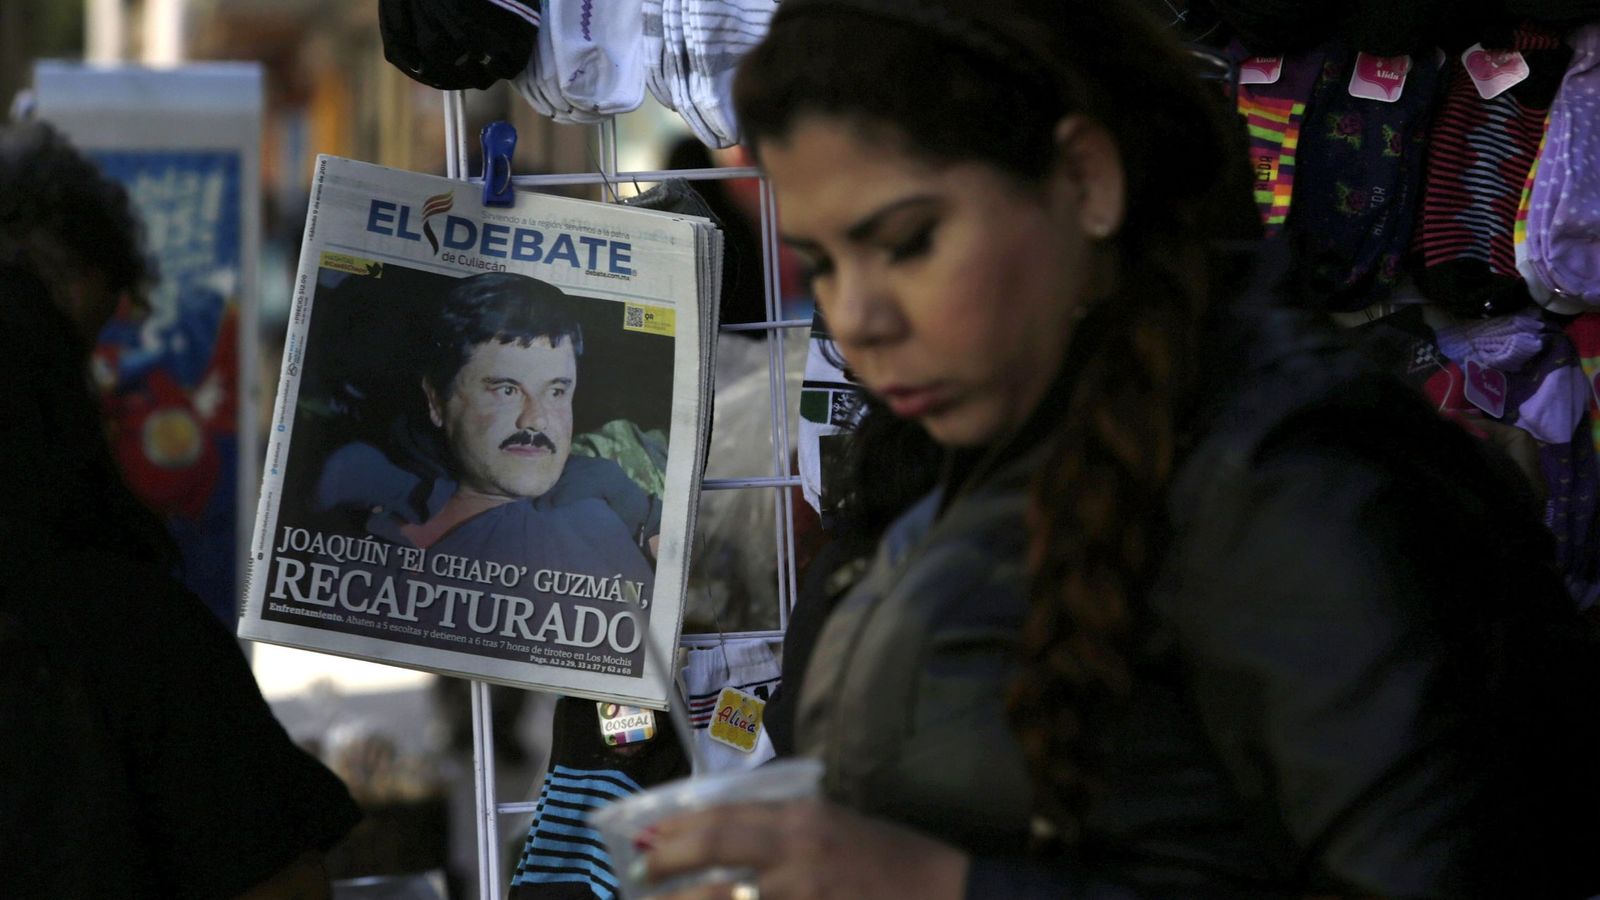 Foto: Imagen de la portada de 'El Debate' con la noticia sobre la detención de 'el Chapo' Guzmán. (Reuters)